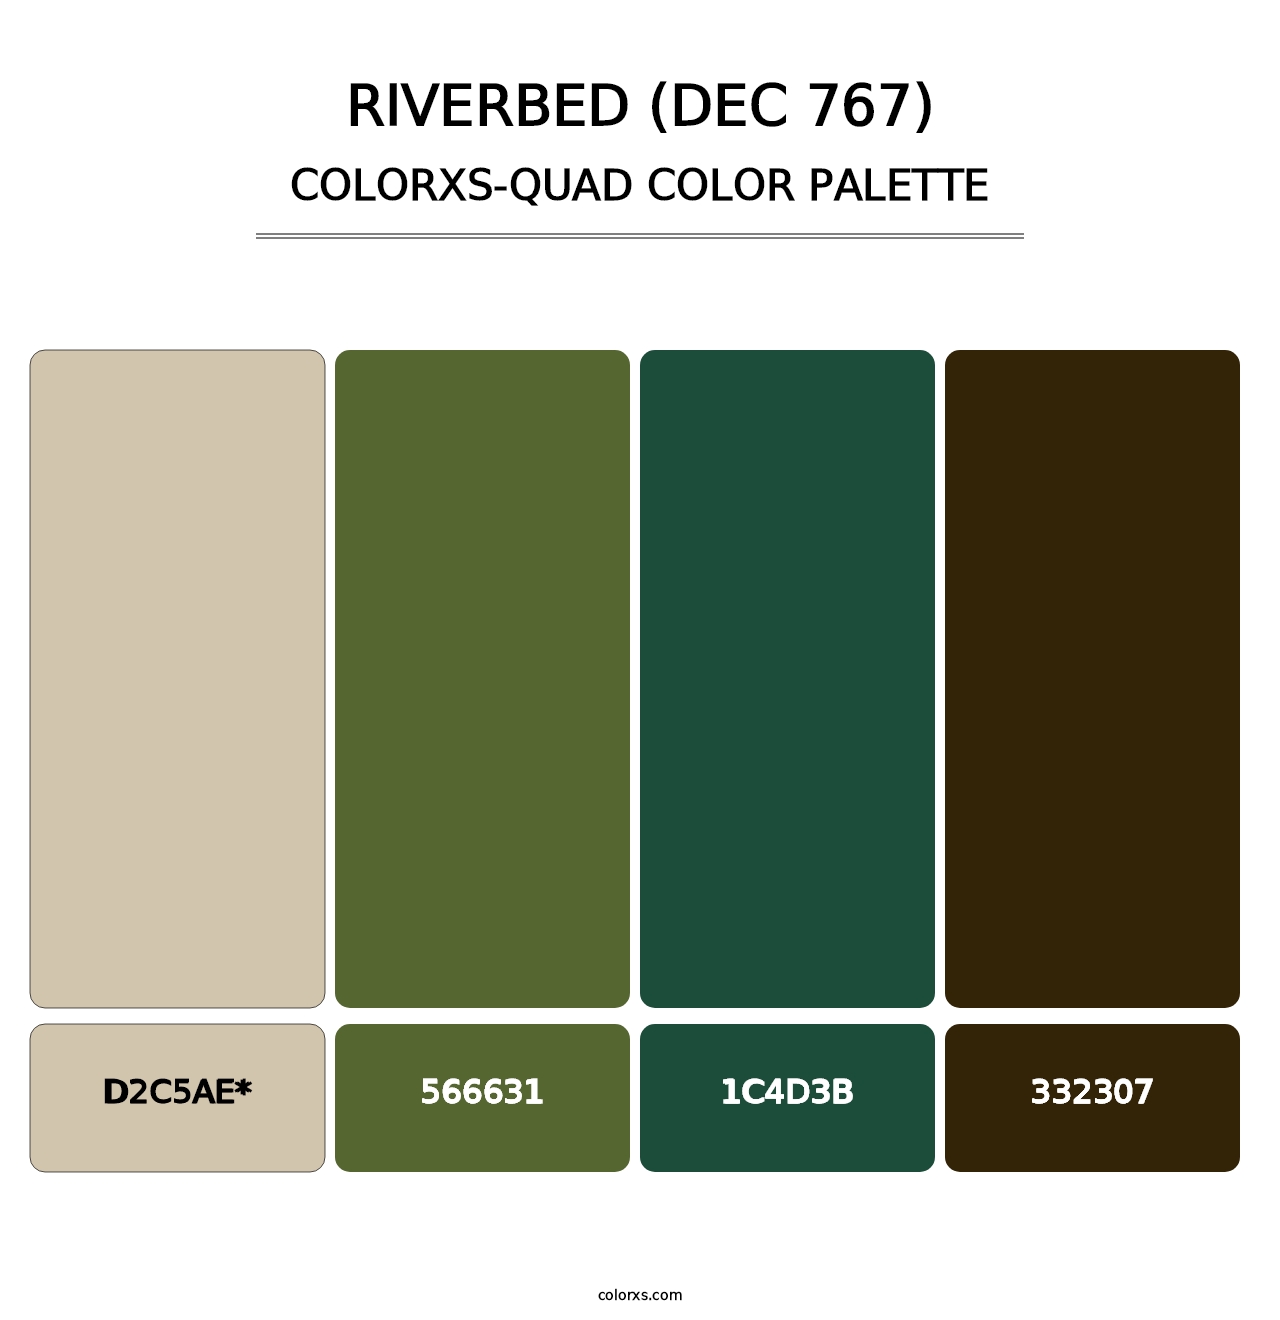 Riverbed (DEC 767) - Colorxs Quad Palette